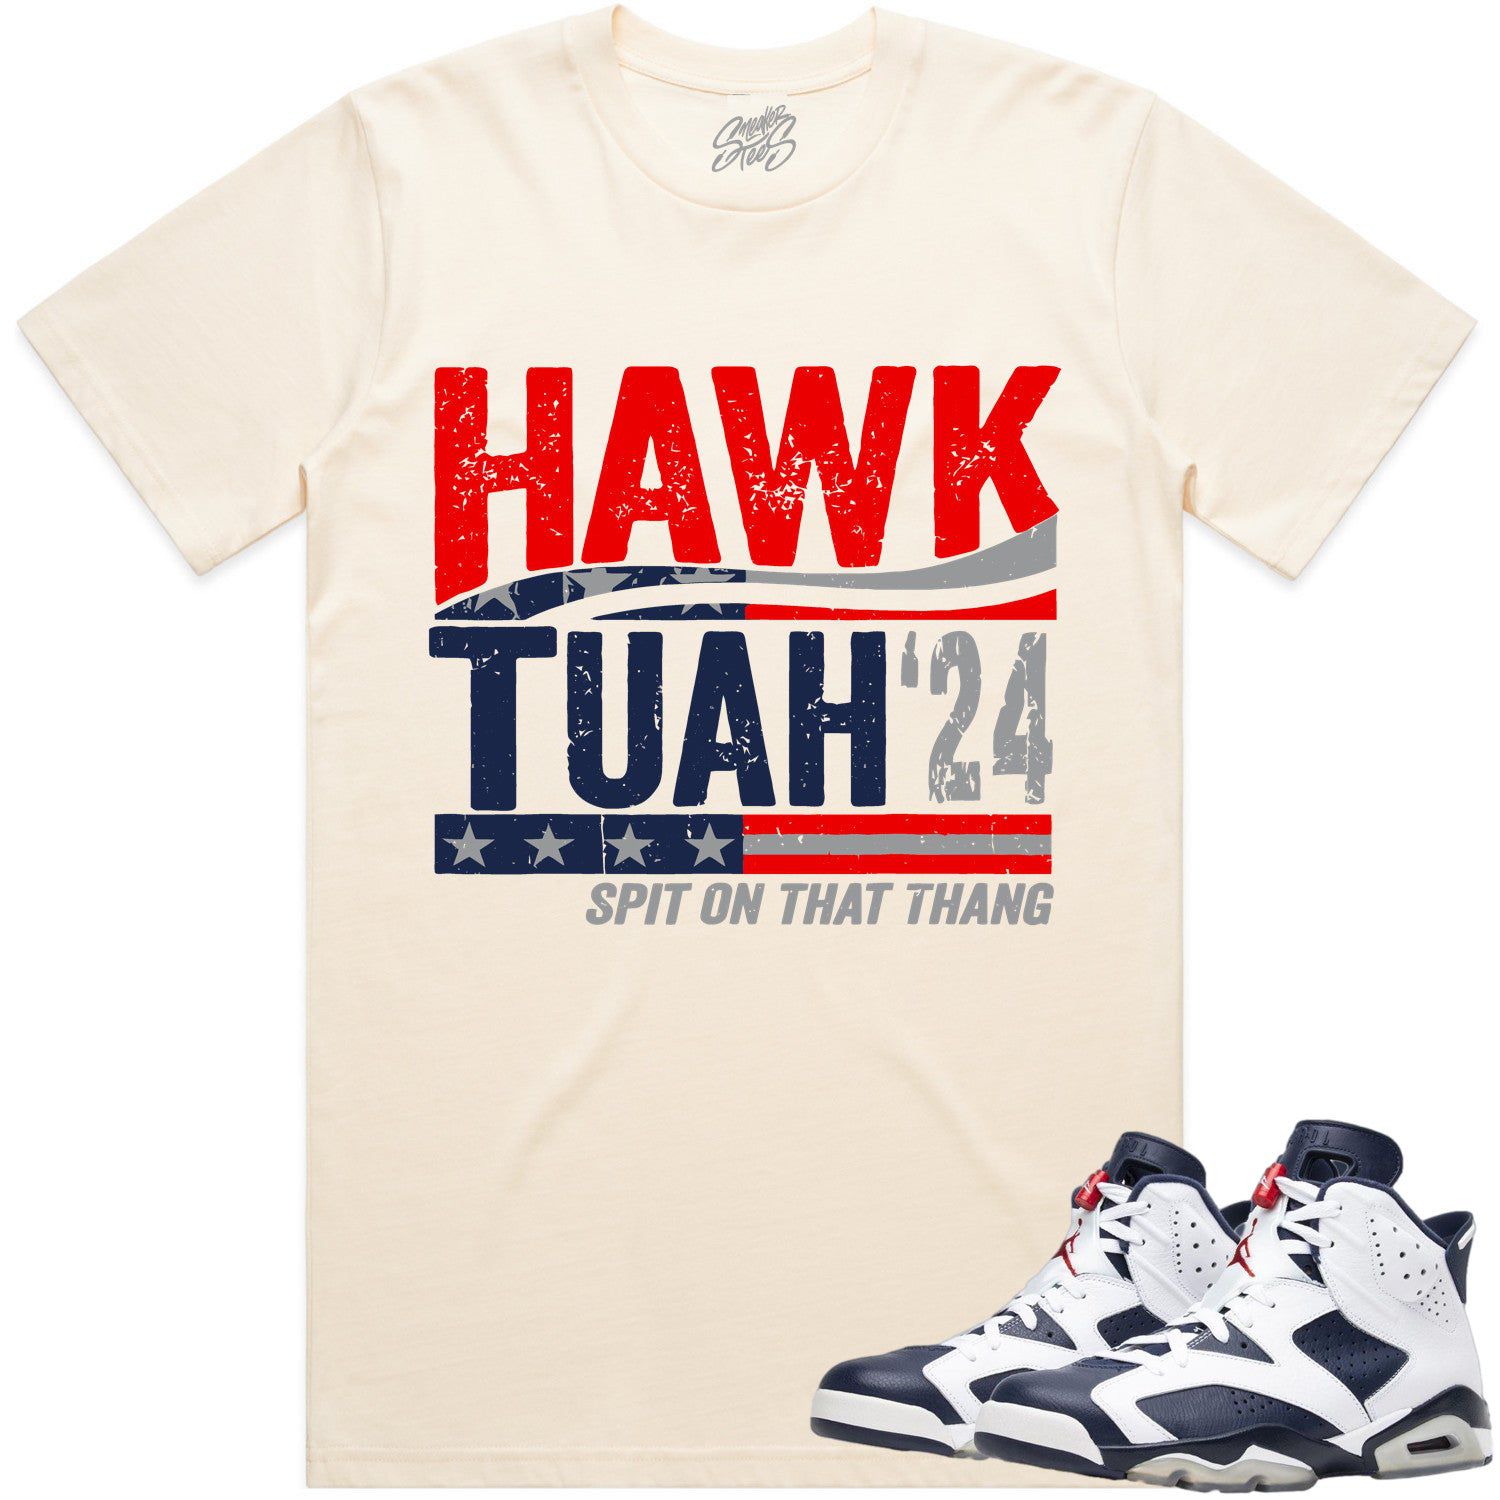 Olympic 6s Shirts - Jordan 6 Olympic Sneaker Tees - Hawk